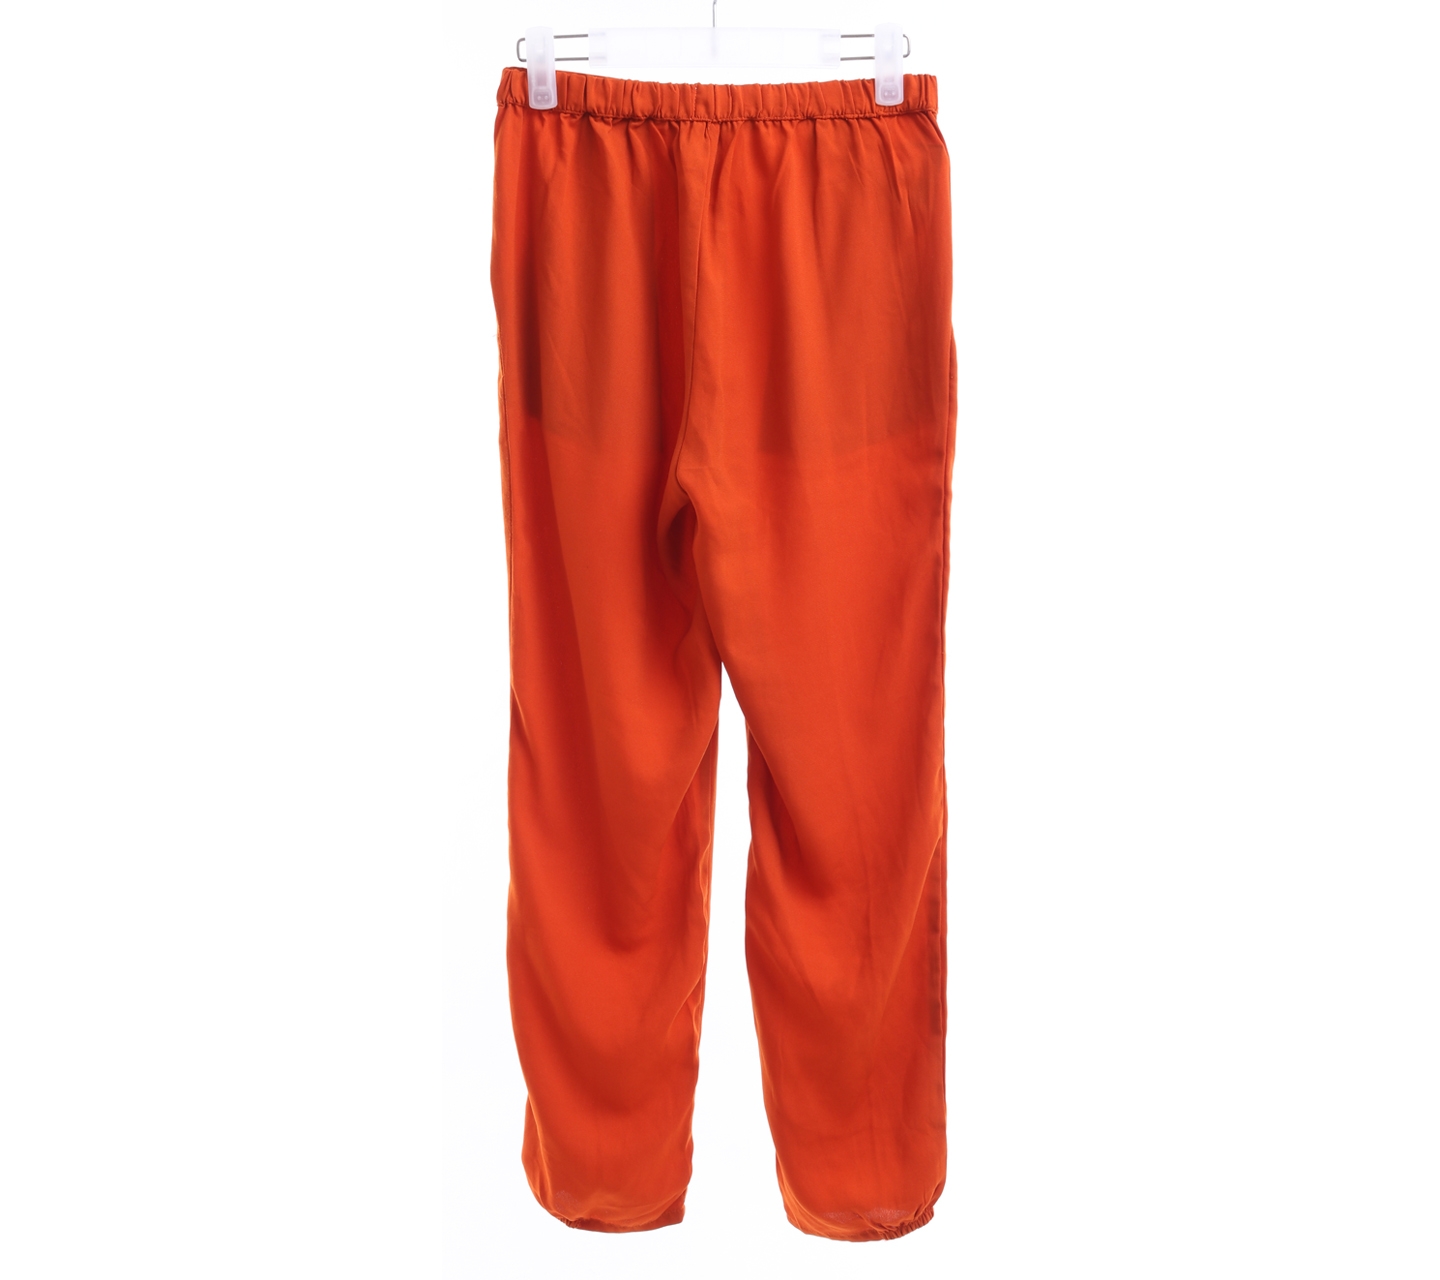 Gaudi Dark Orange Long Pants